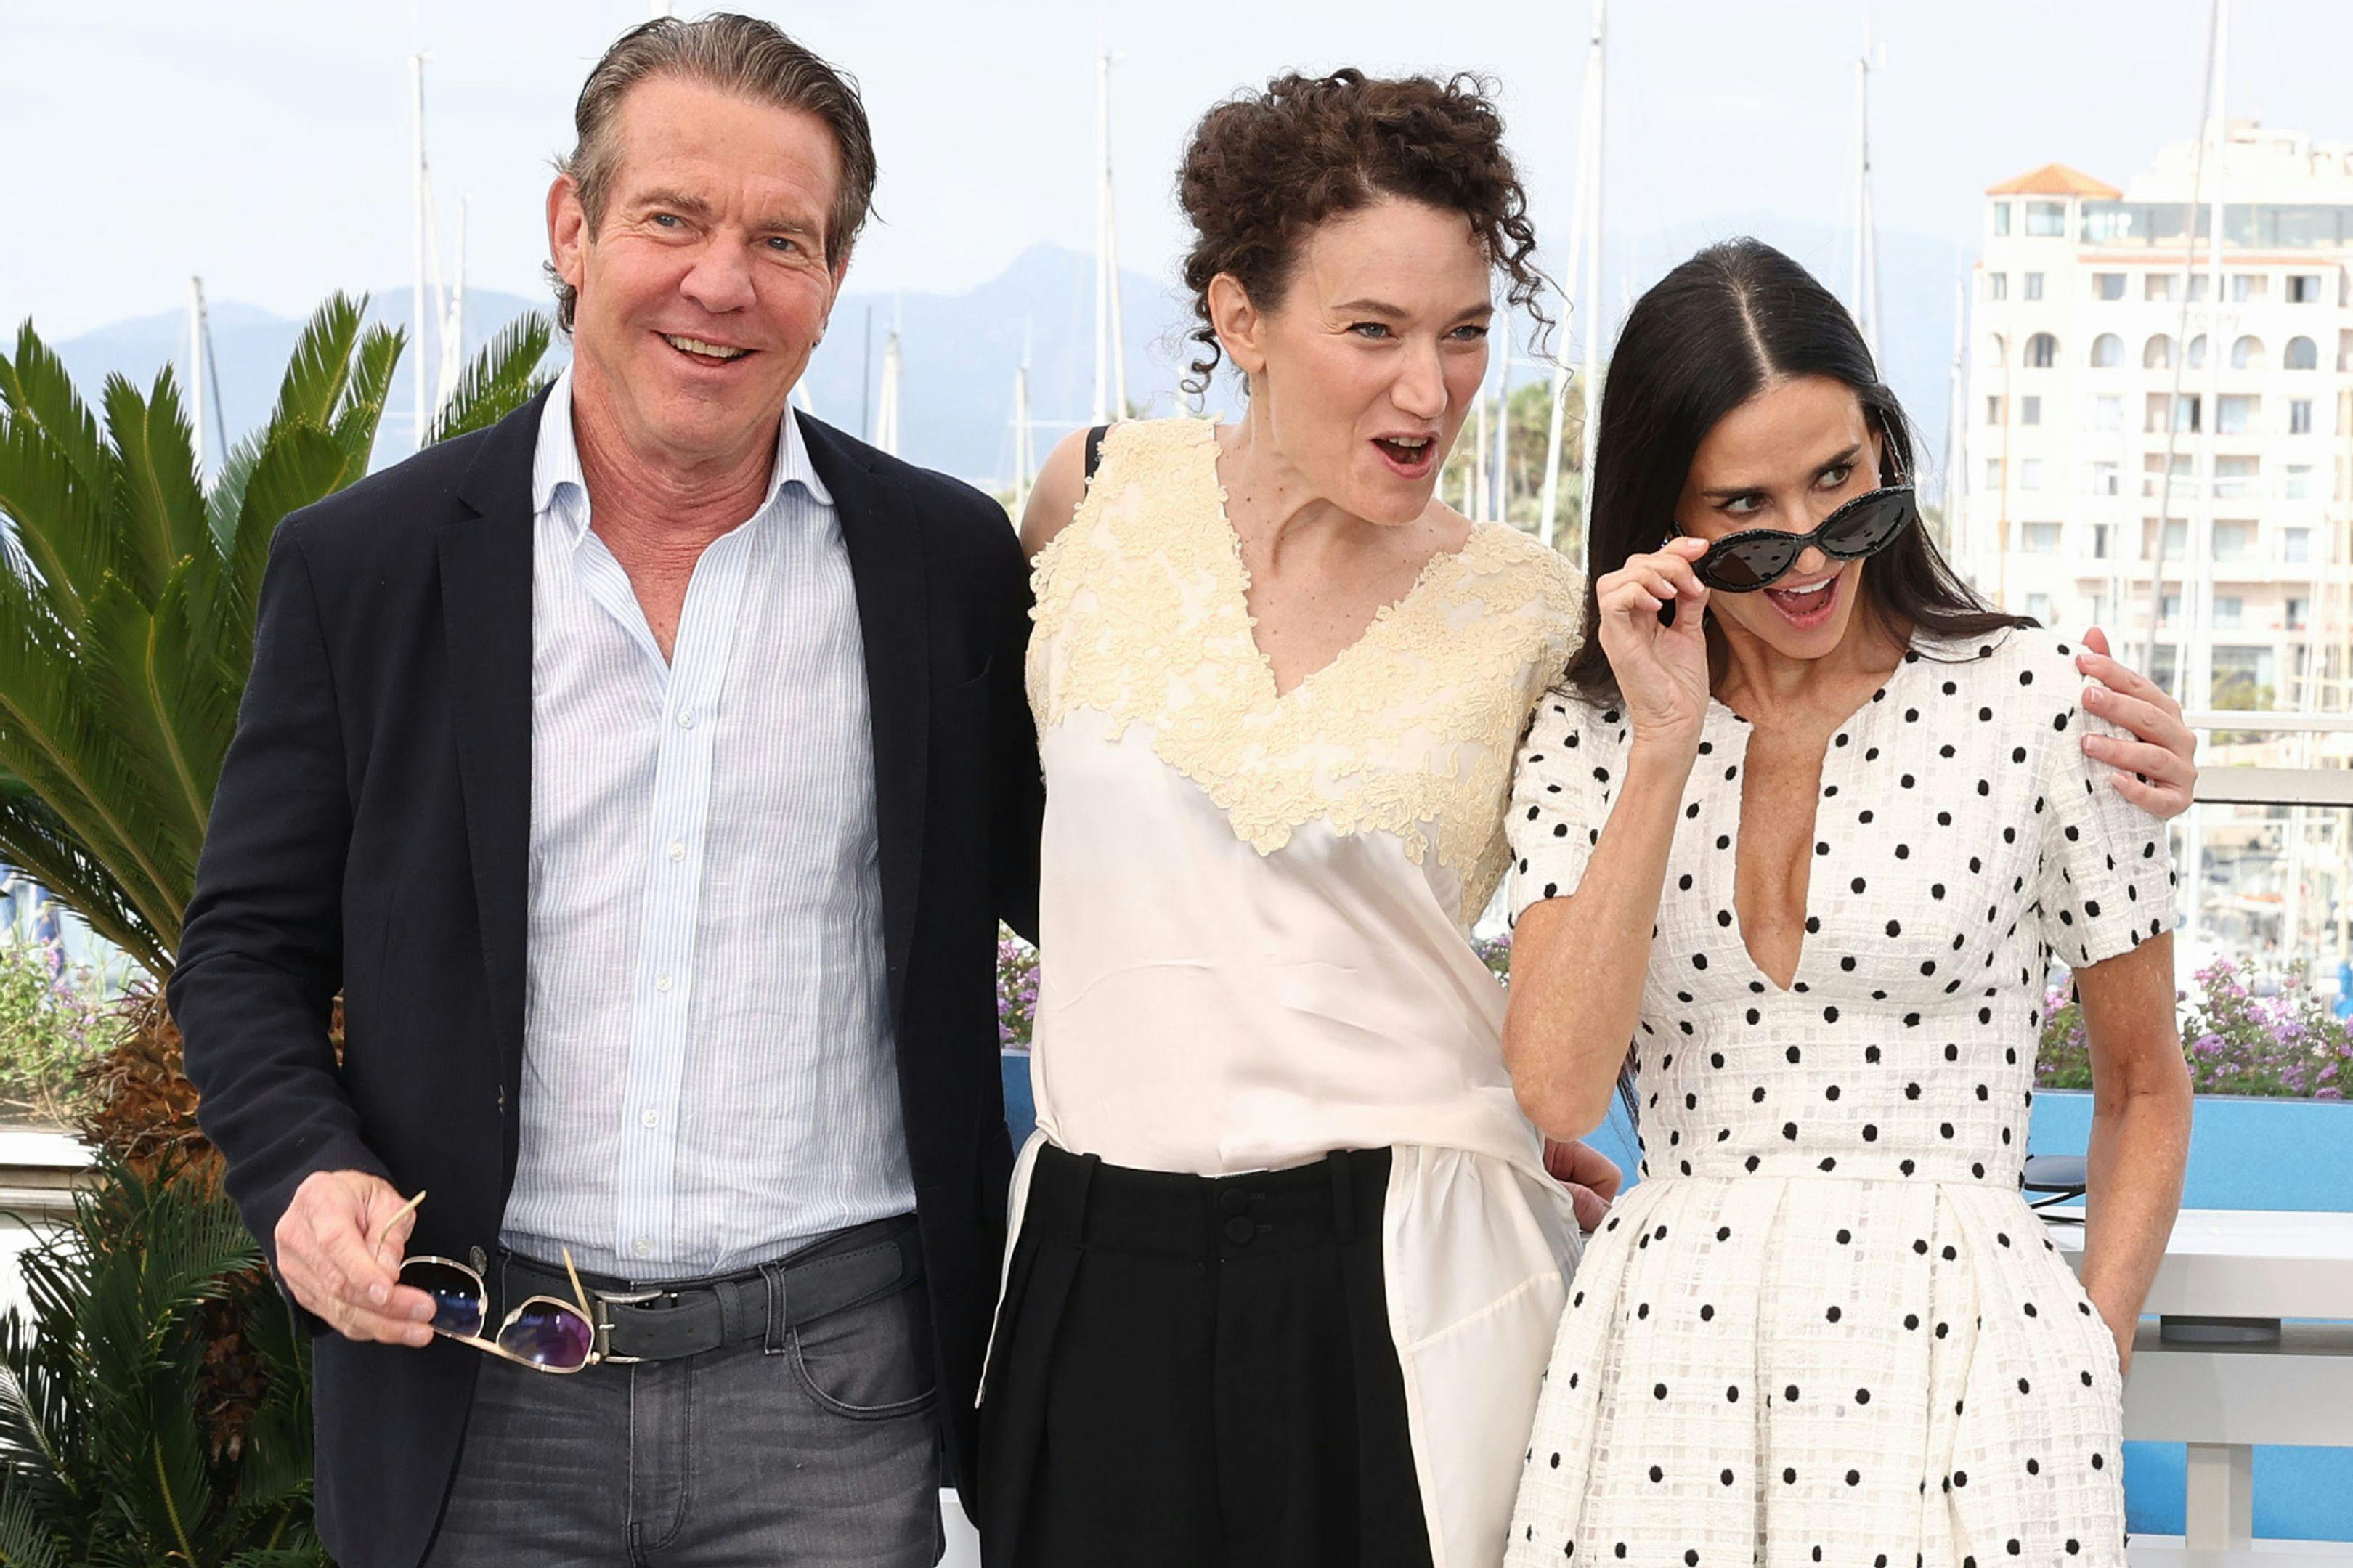 La directora Coralie Fargeat y los actores Demi Moore y Dennis Quaid en el photocall de 'The substance' en Cannes